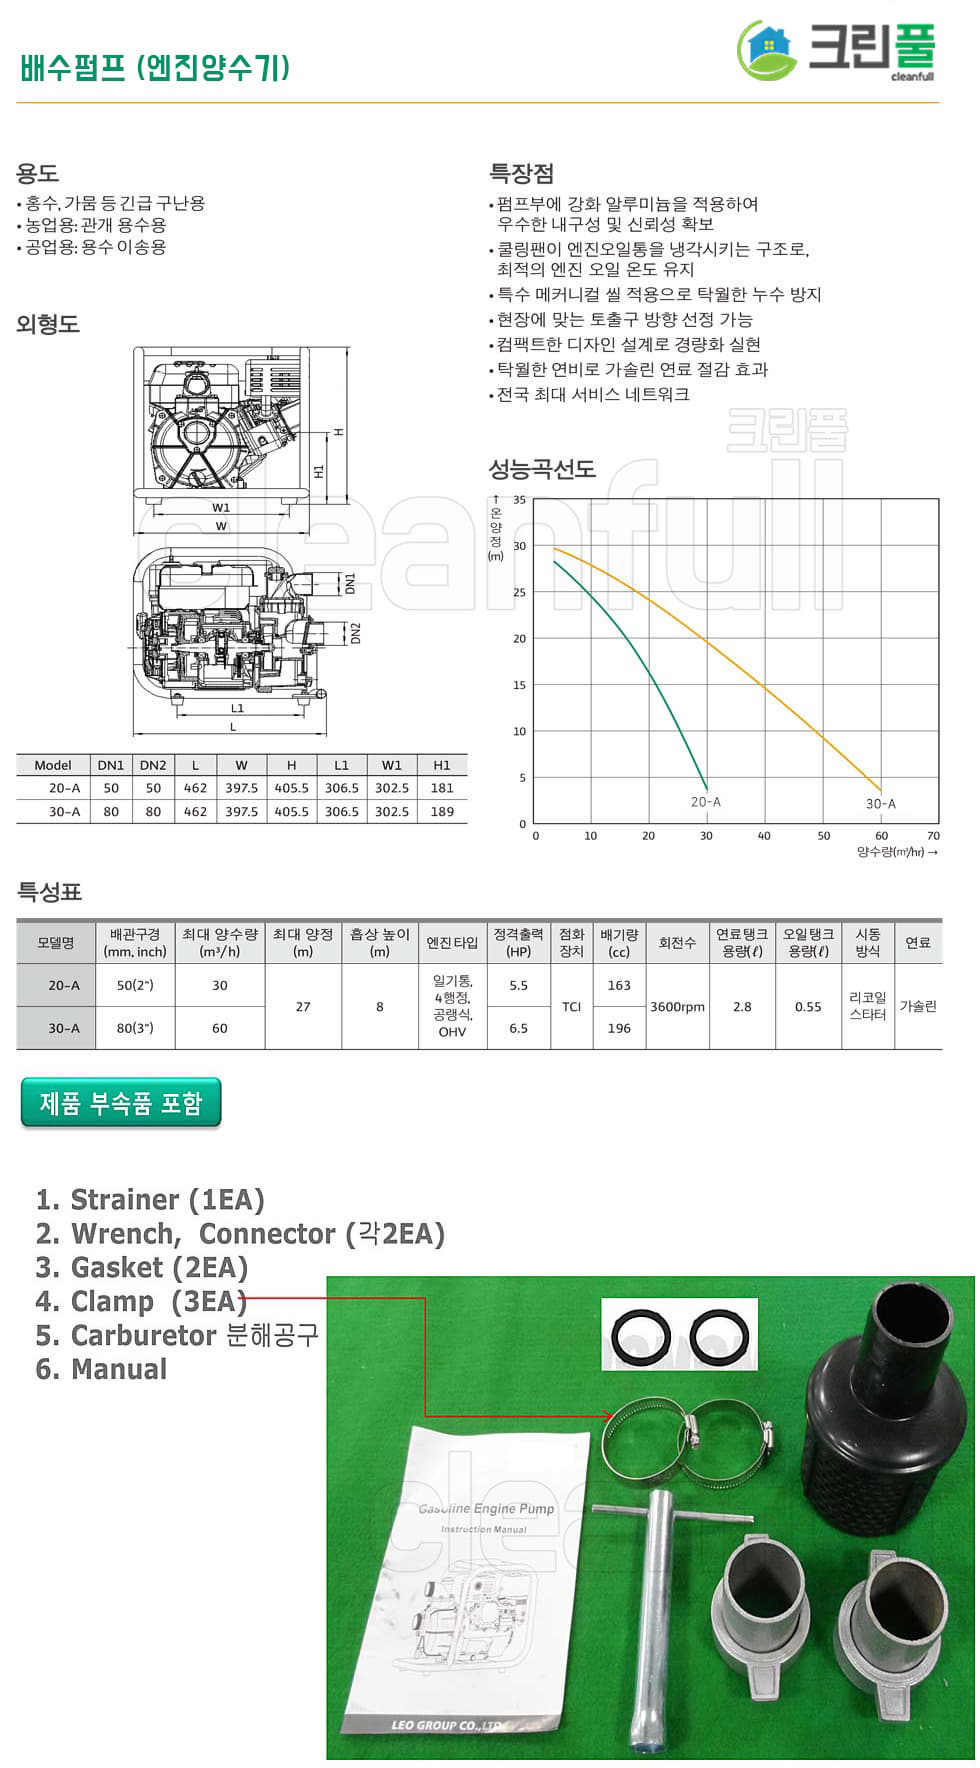 배수펌프 5.5마력 80A GP20-A(50A 5.5HP) 엔진양수기_저수조청소업 신고 허가장비-배수펌프 5마력 이상